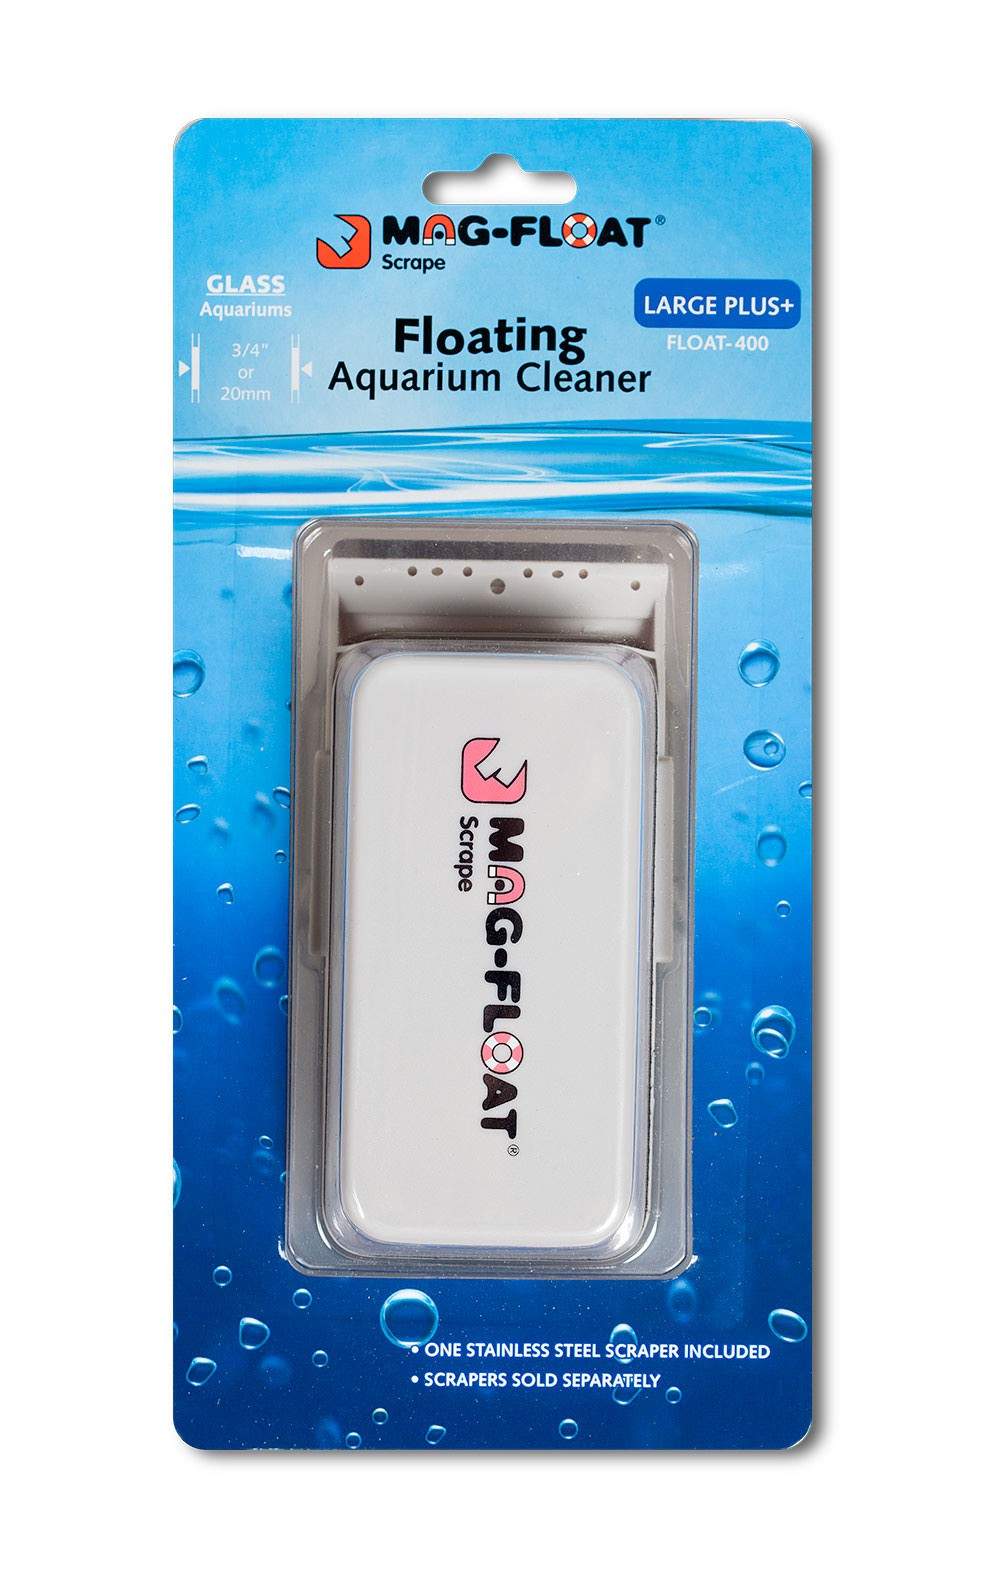 Mag-Float Floating Magnet Glass Aquarium Cleaner Large Plus+